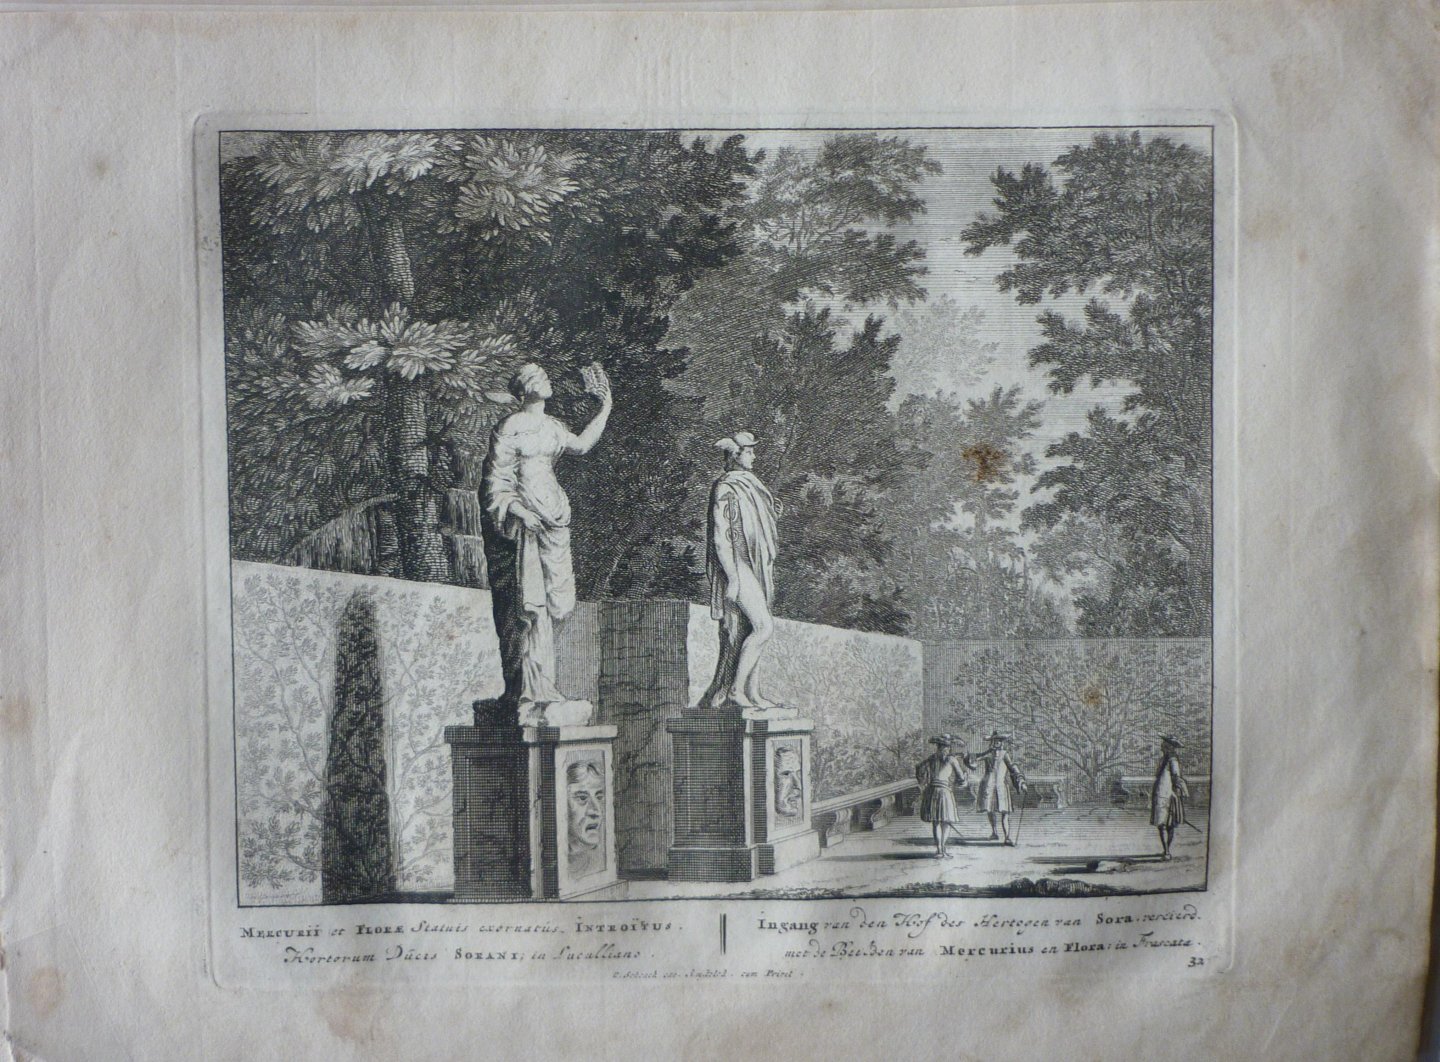 Schenck, Petrus [Pieter Schenk] - Ingang van den Hof des Hertogen van Sora Mercurius en Flora 32. Originele kopergravure.